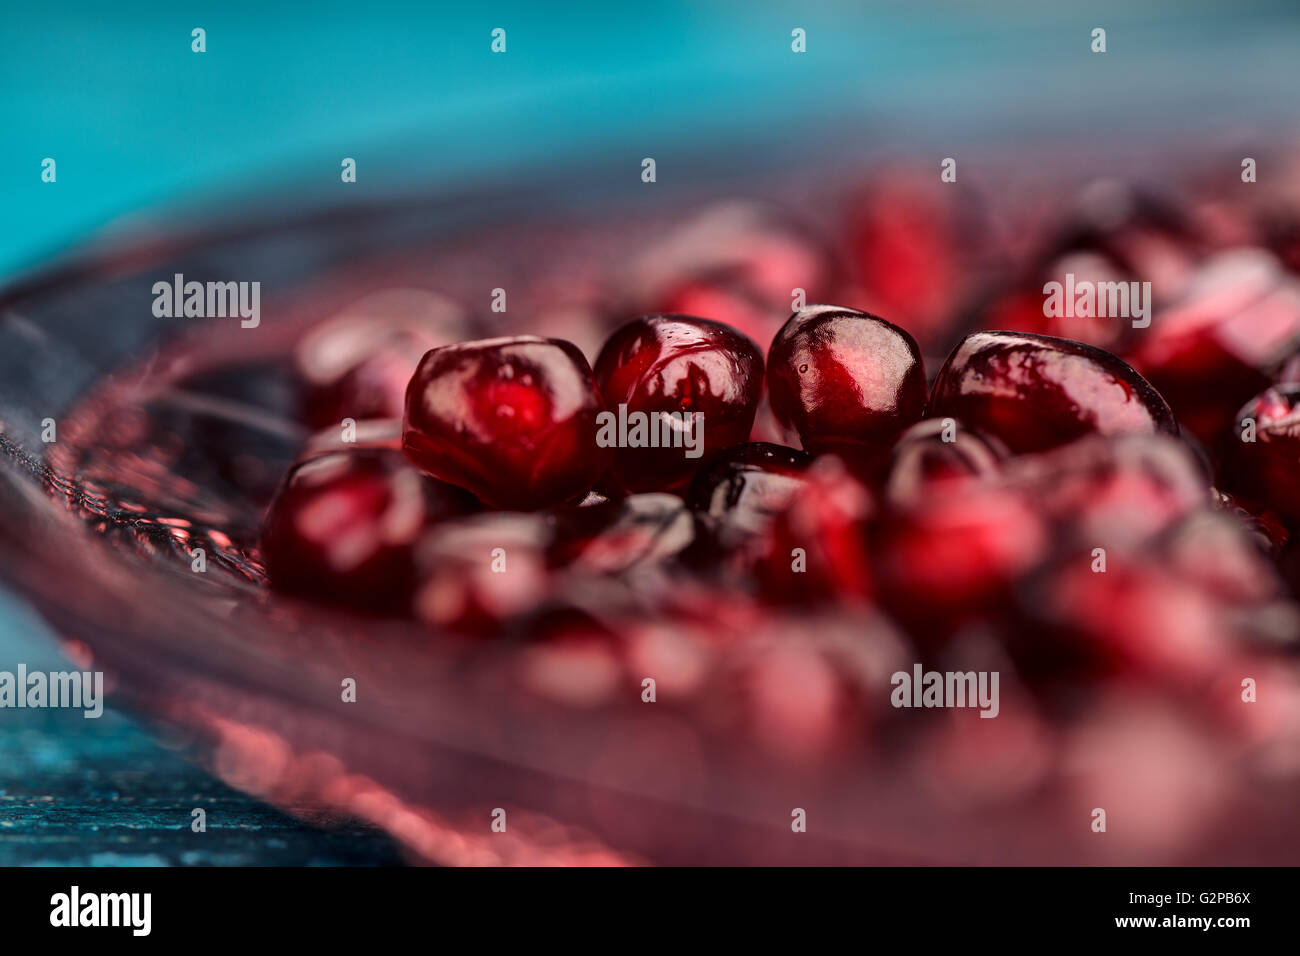 Frische helle rote Granatapfel Grenadine Obst Samen auf blauen hölzernen Hintergrund stilleben Studio gedreht Stockfoto